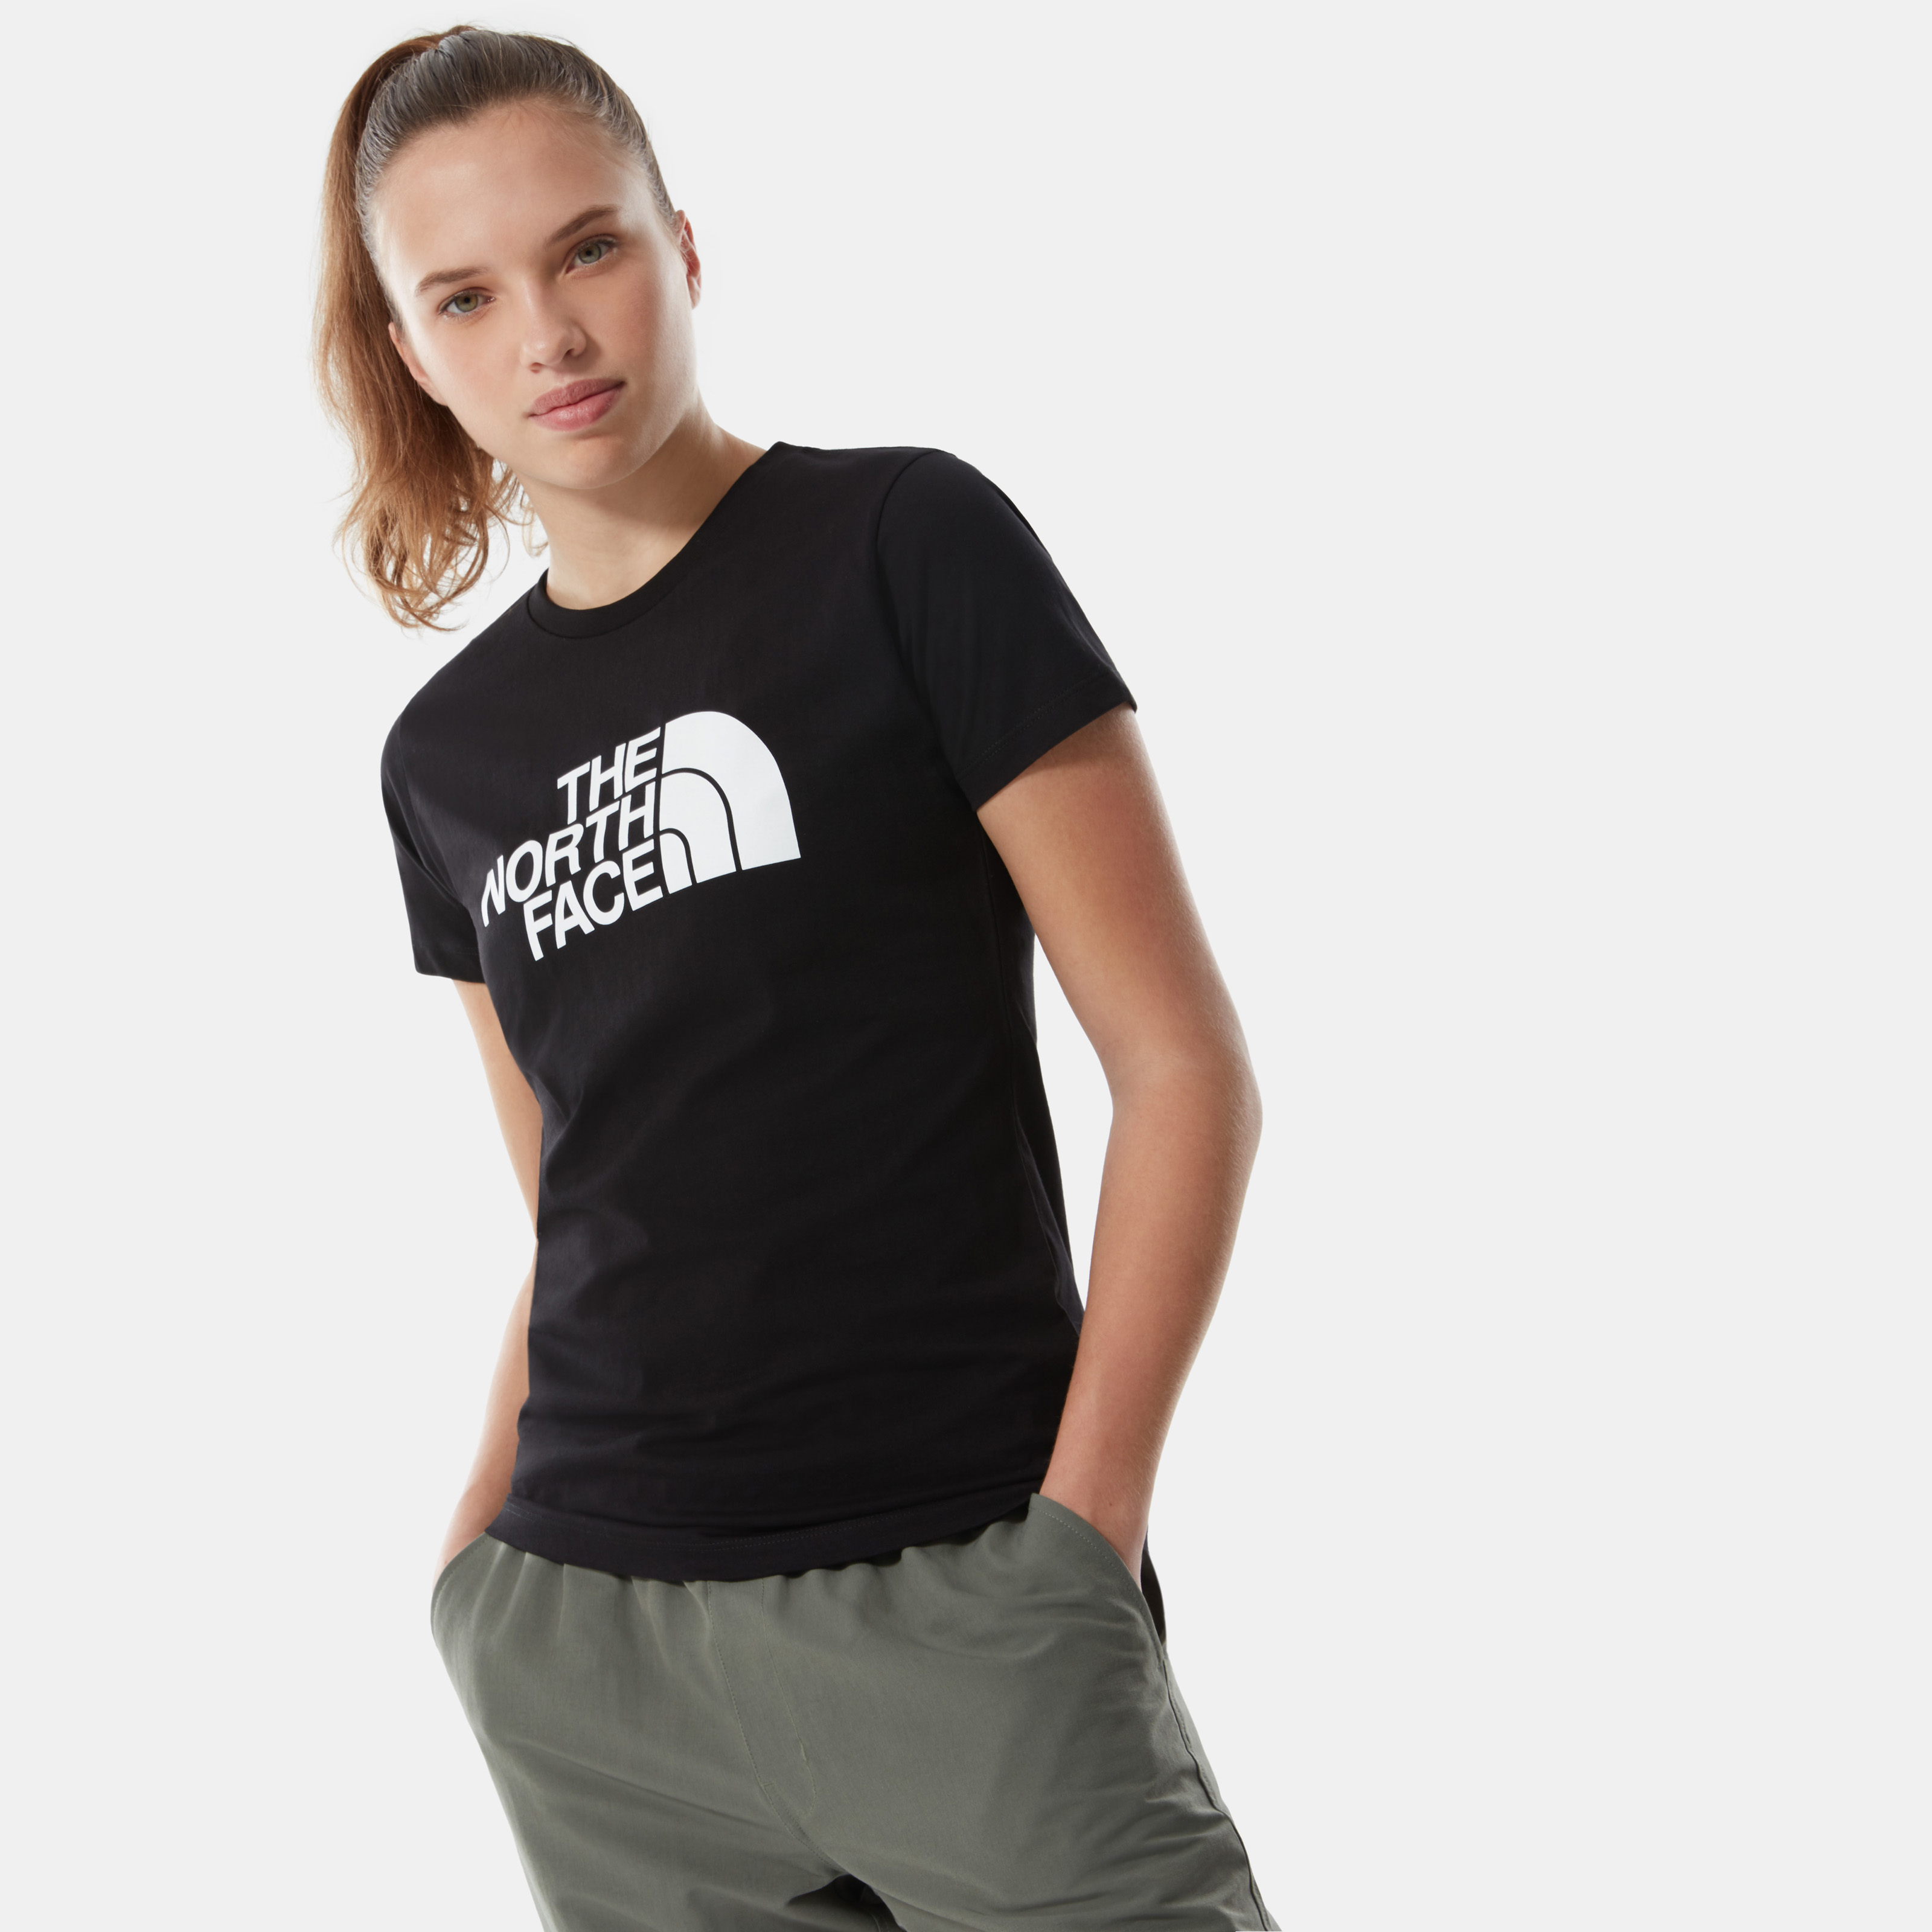 Женская футболка Easy - изображение №1